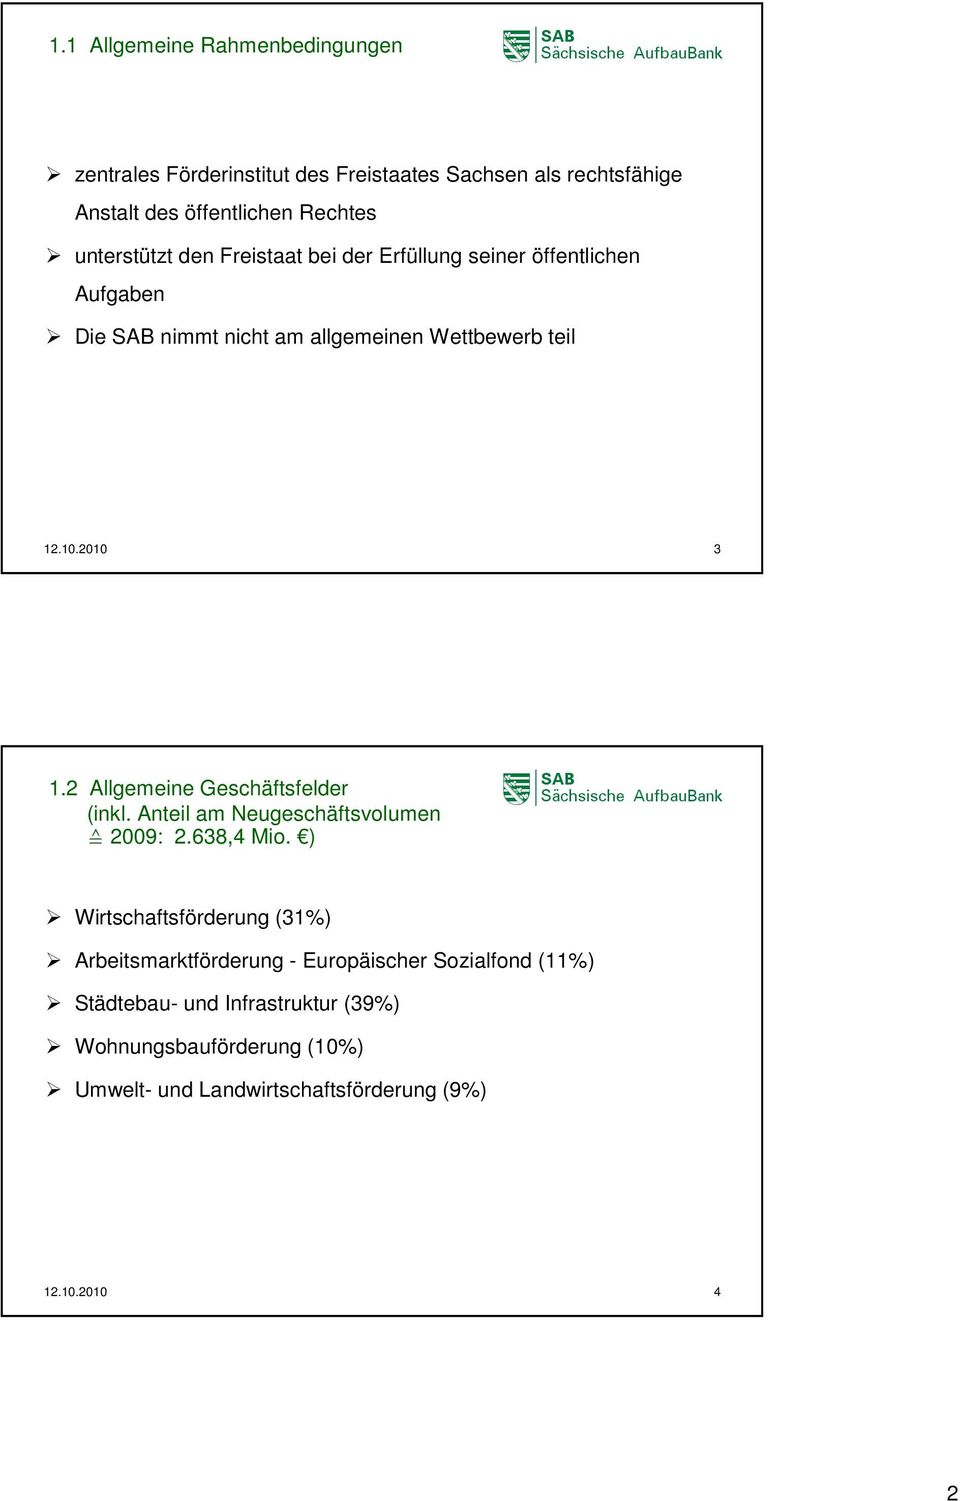 2 Allgemeine Geschäftsfelder (inkl. Anteil am Neugeschäftsvolumen 2009: 2.638,4 Mio.